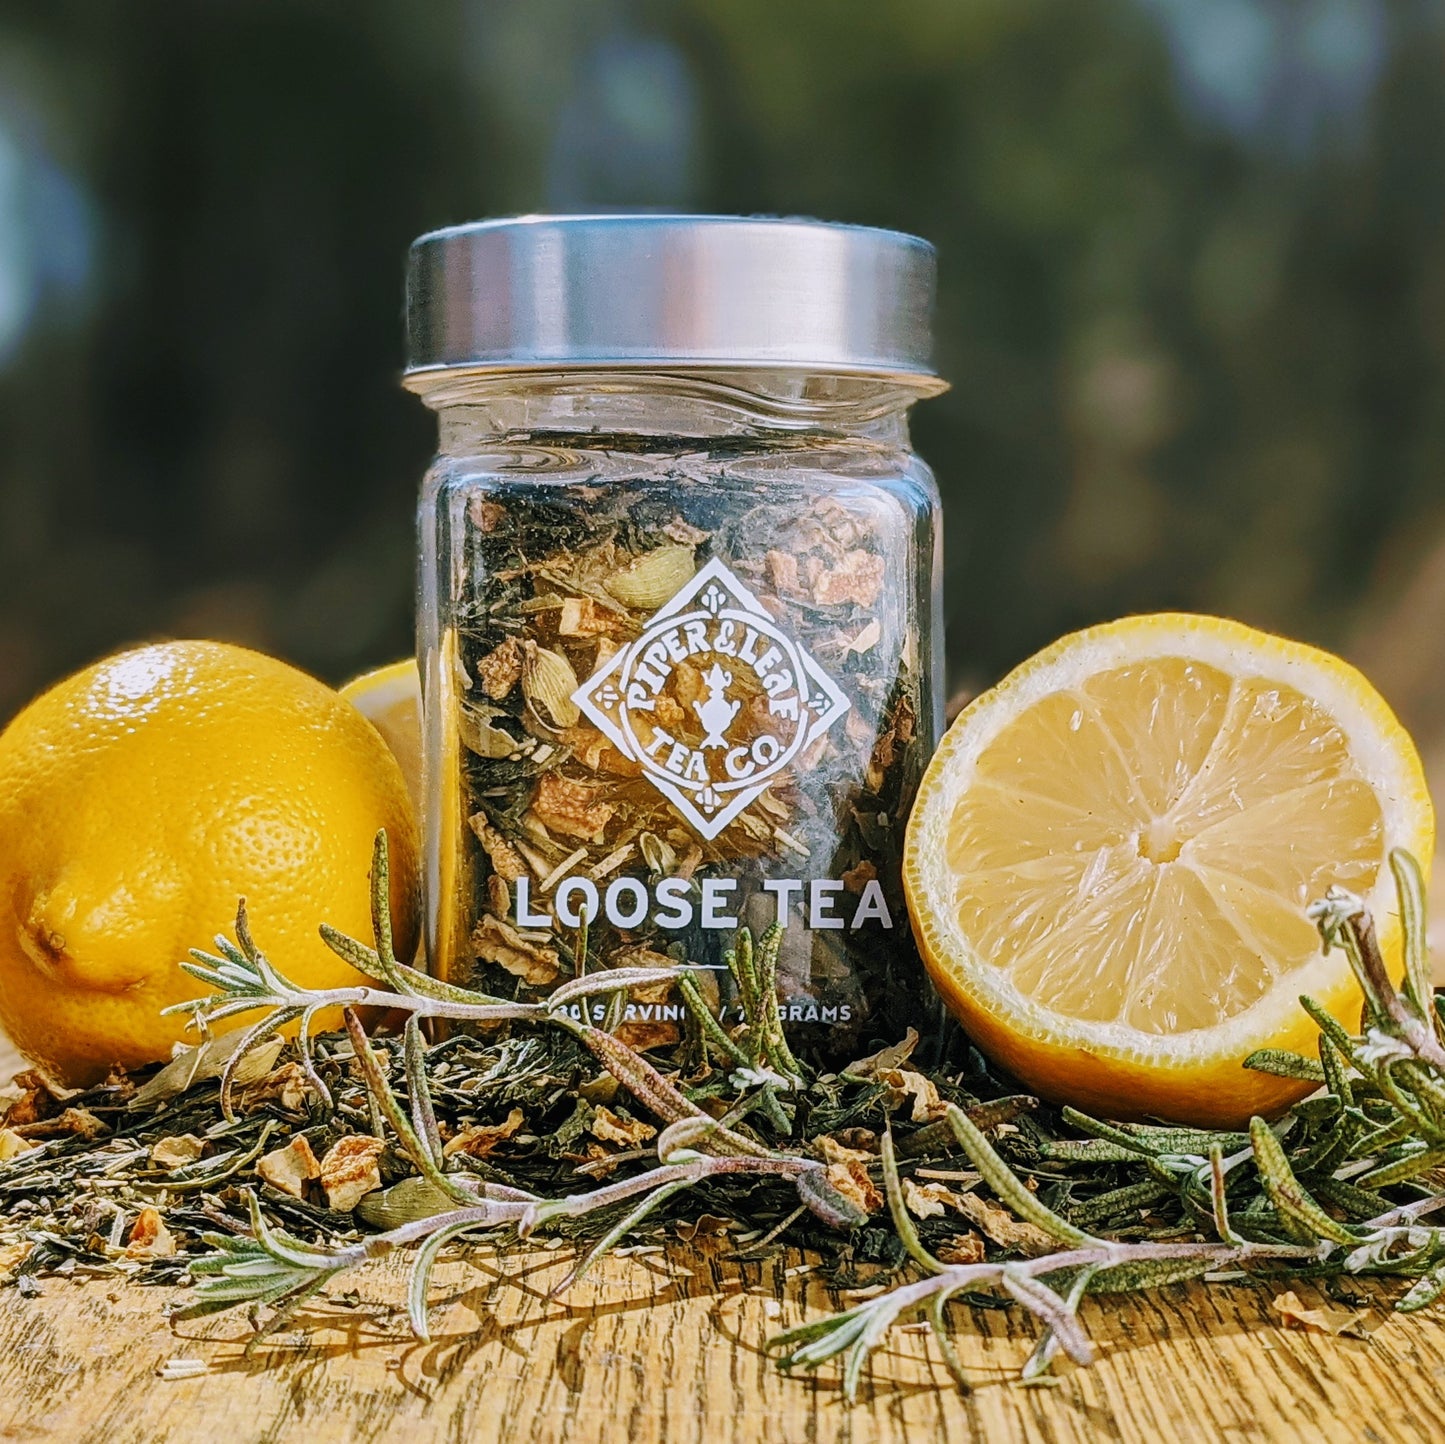 Springdrop Spritzer Glass Jar of Loose Leaf Tea - 30 Servings